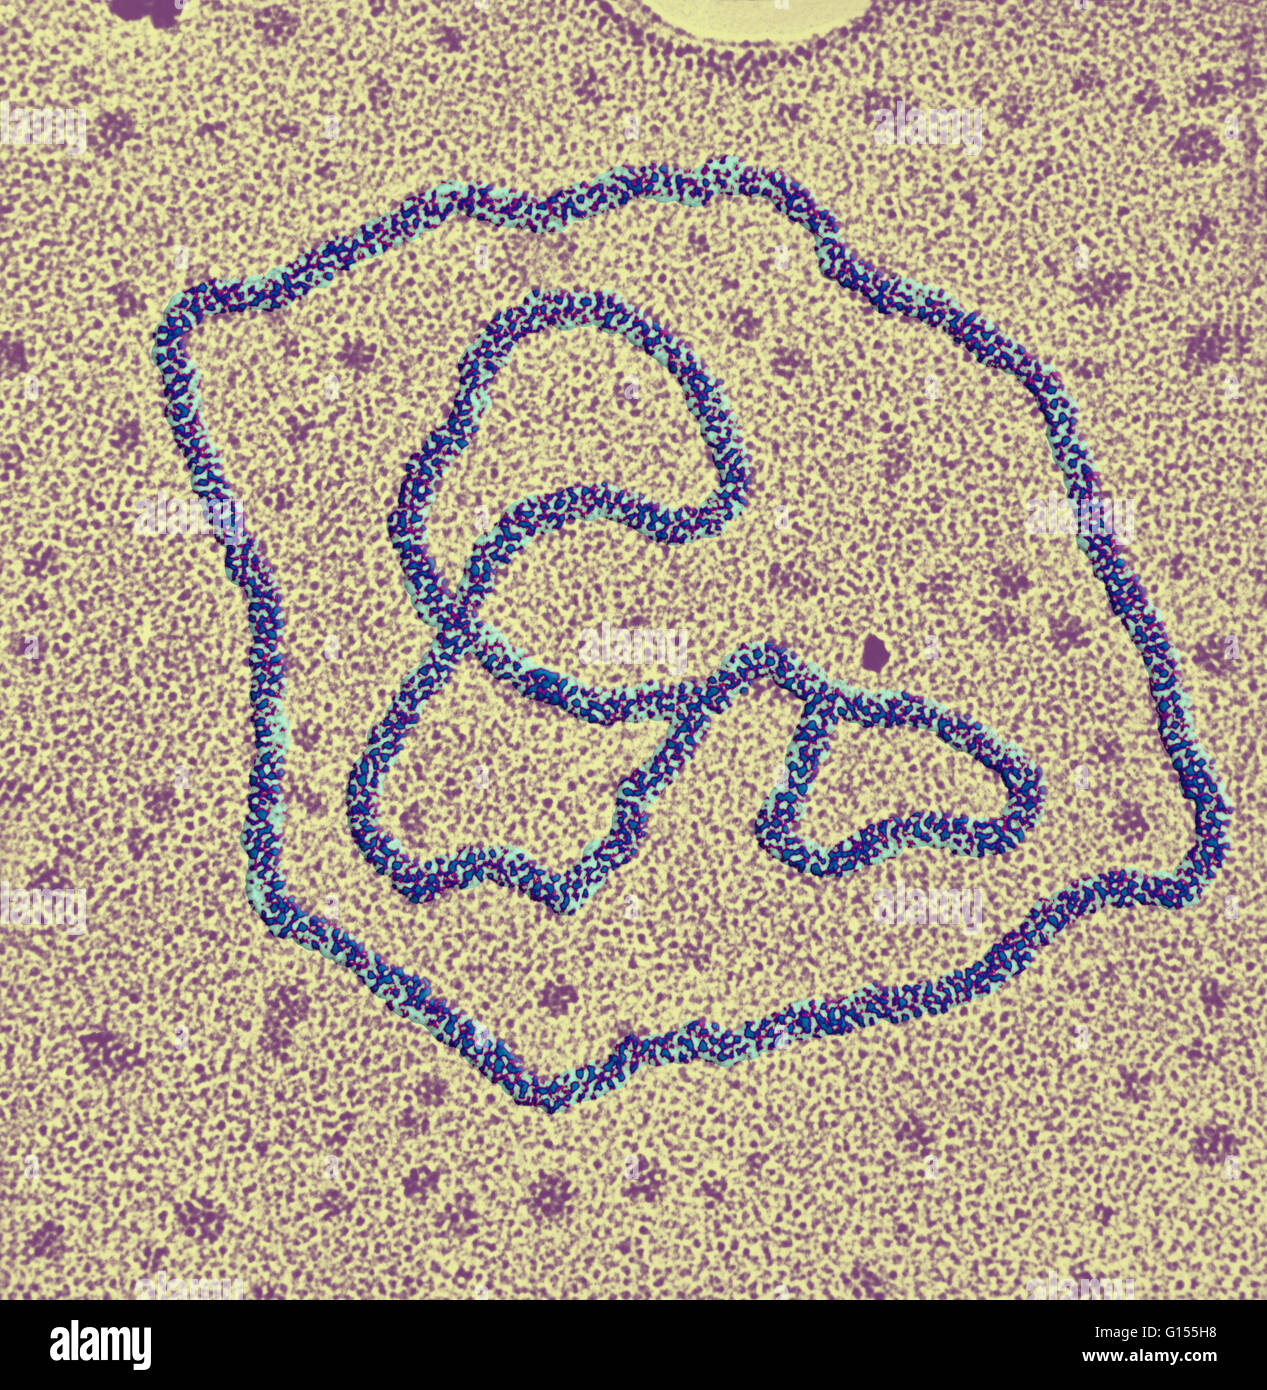 Micrographe de deux anneaux d'ADN viral. Deux microns de longueur. Banque D'Images